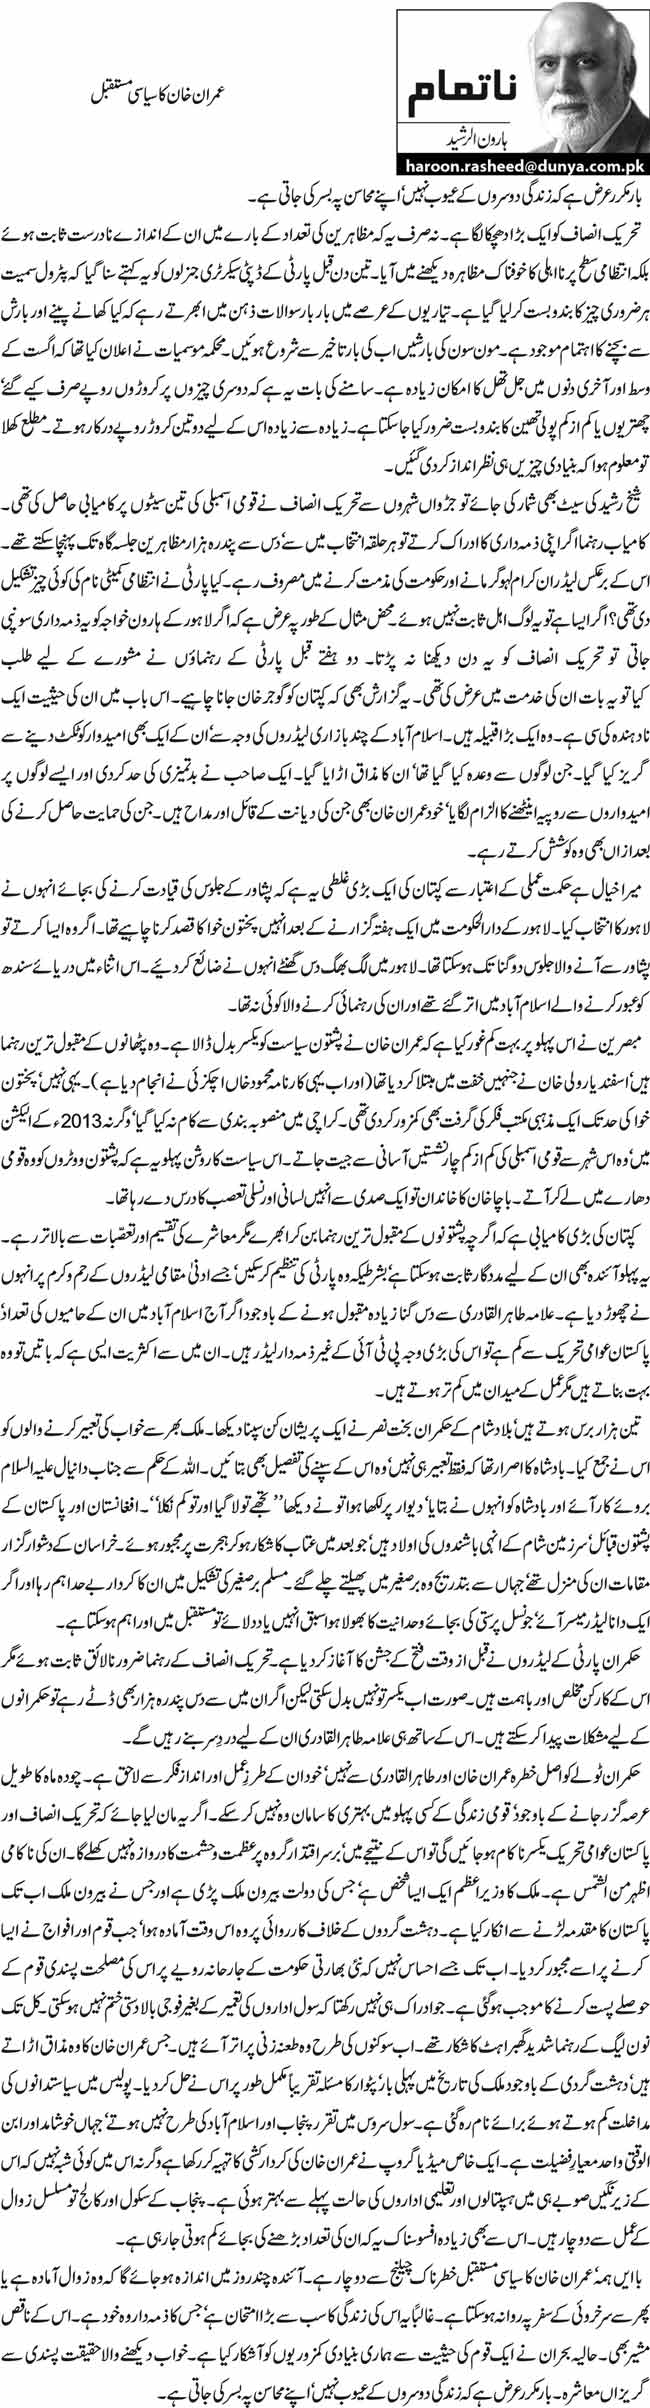 عمران خان کا سیاسی مستقبل  